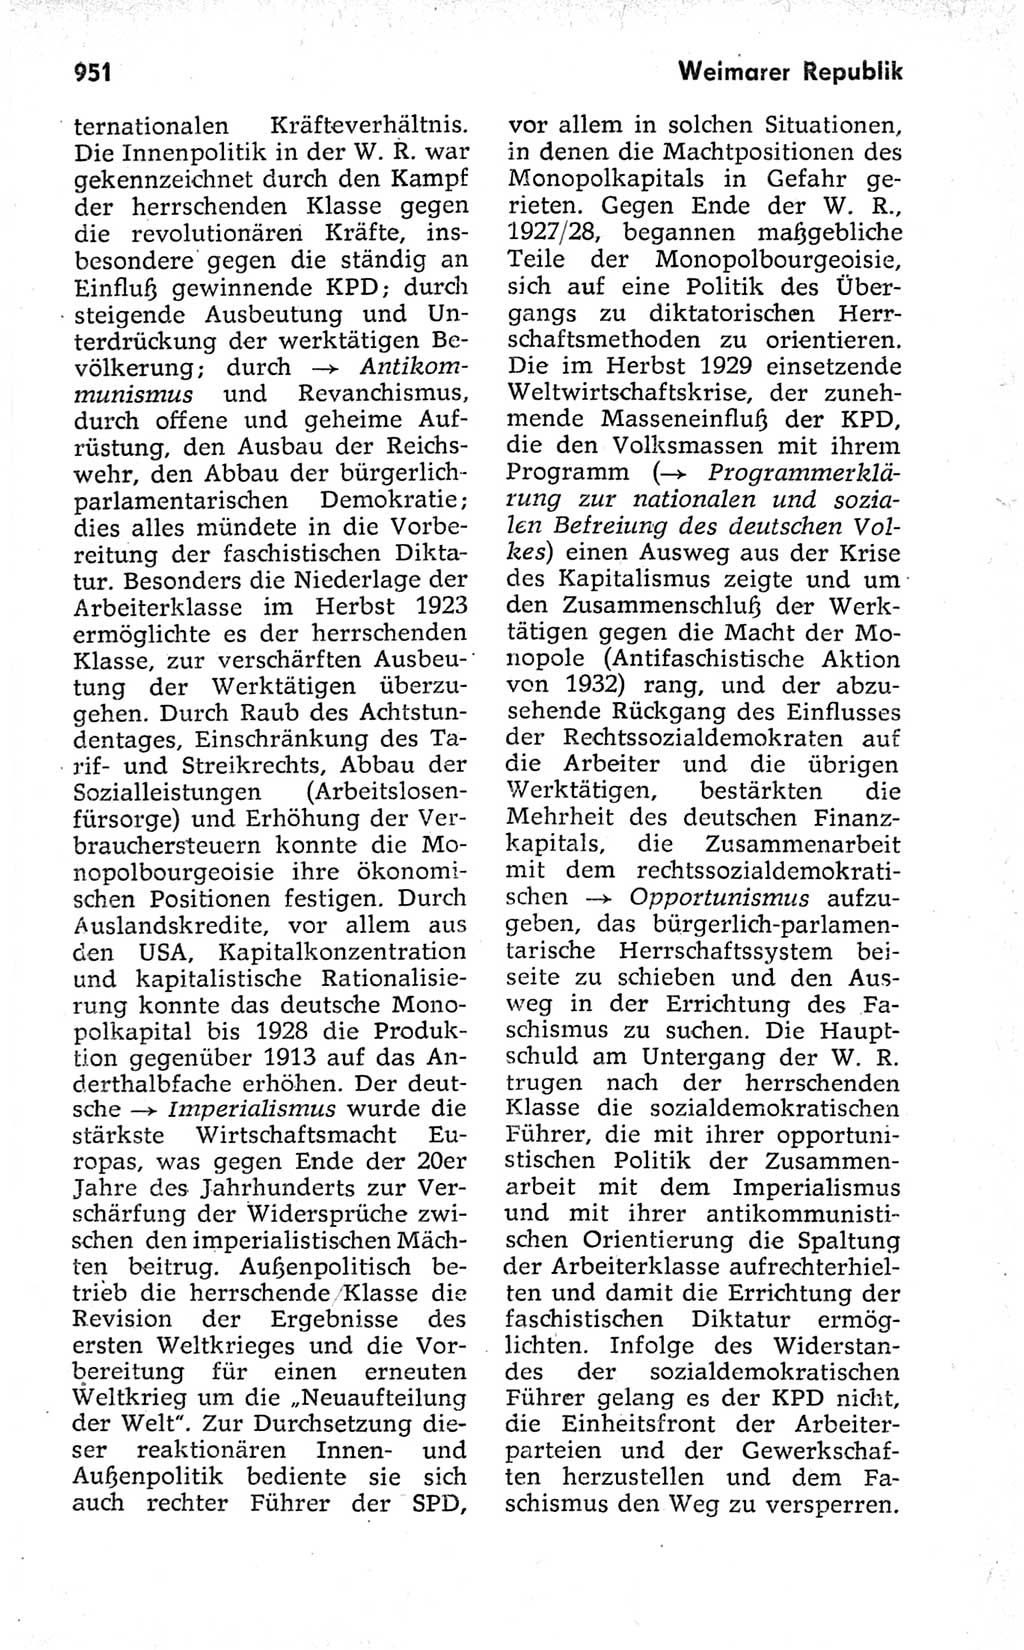 Kleines politisches Wörterbuch [Deutsche Demokratische Republik (DDR)] 1973, Seite 951 (Kl. pol. Wb. DDR 1973, S. 951)